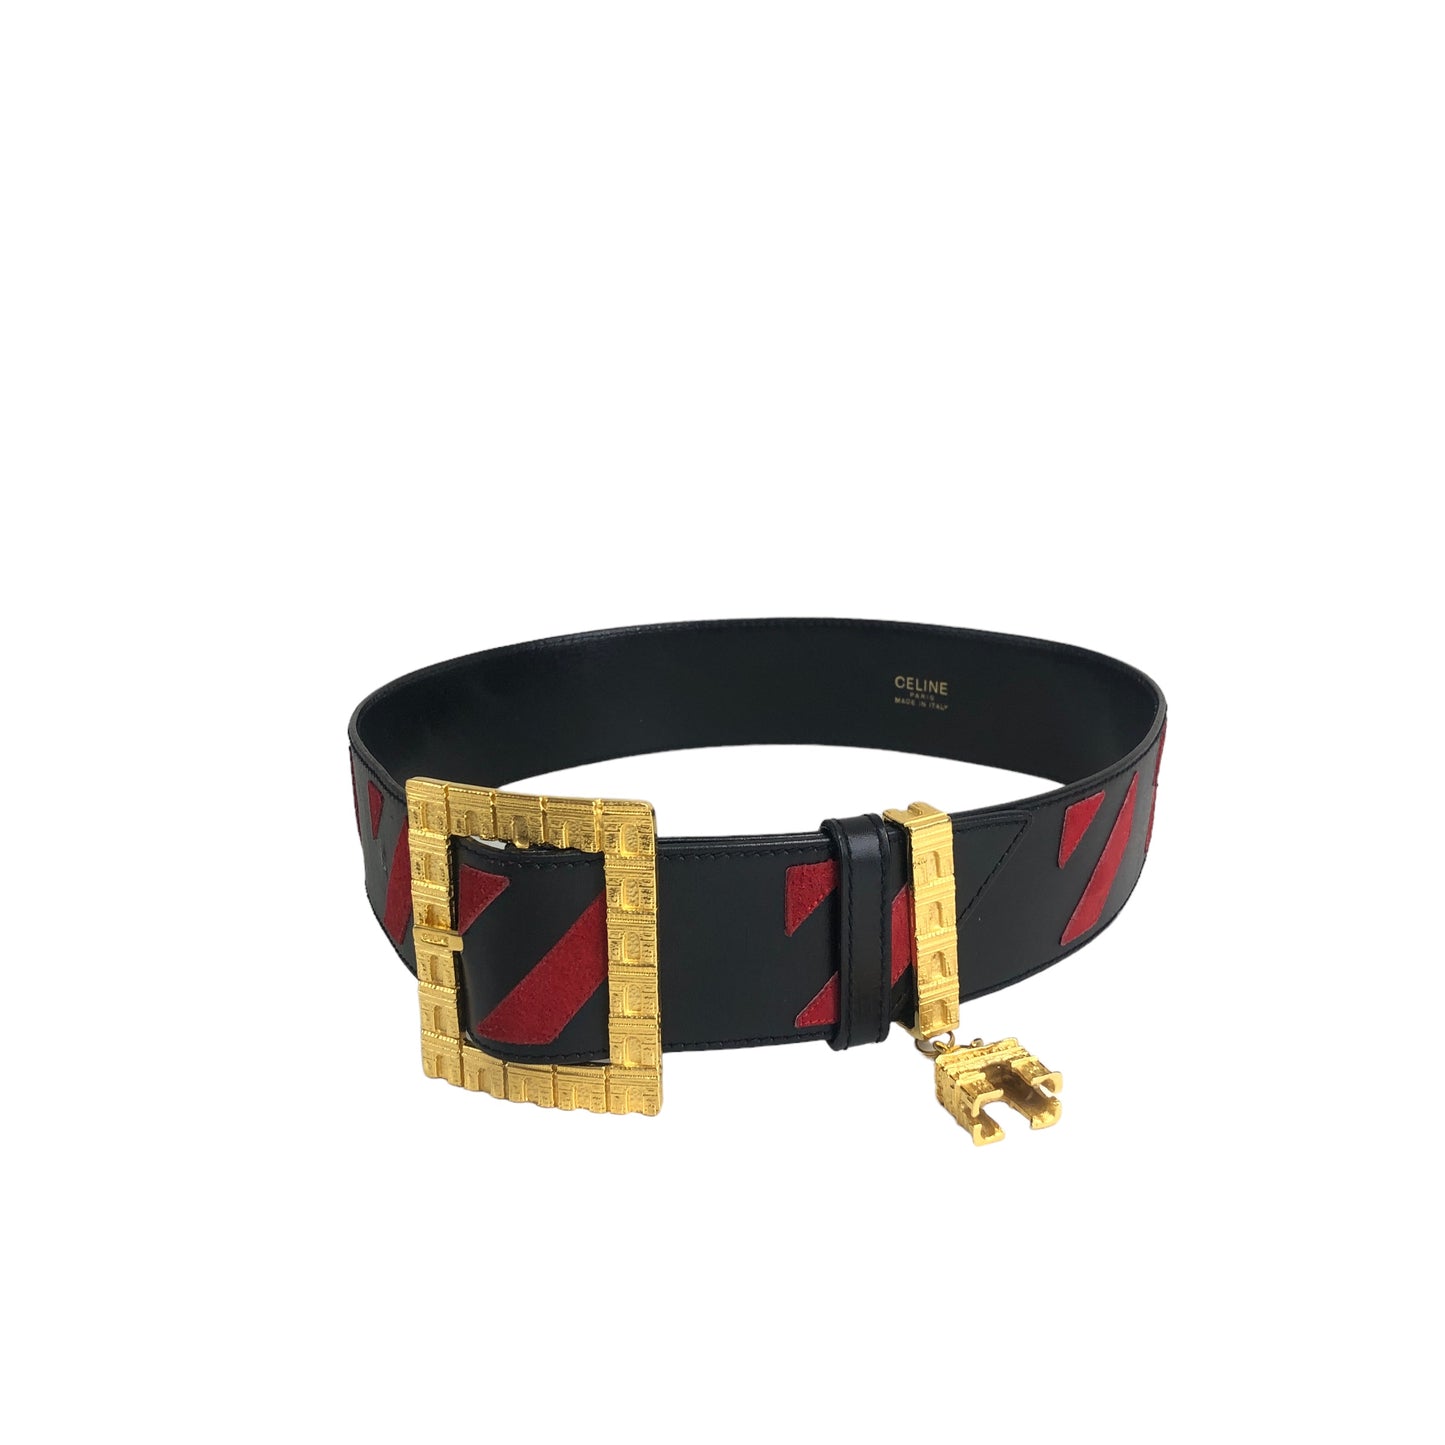 CELINE Arc de Triomphe Leather Belt Black Red Vintage infs5j